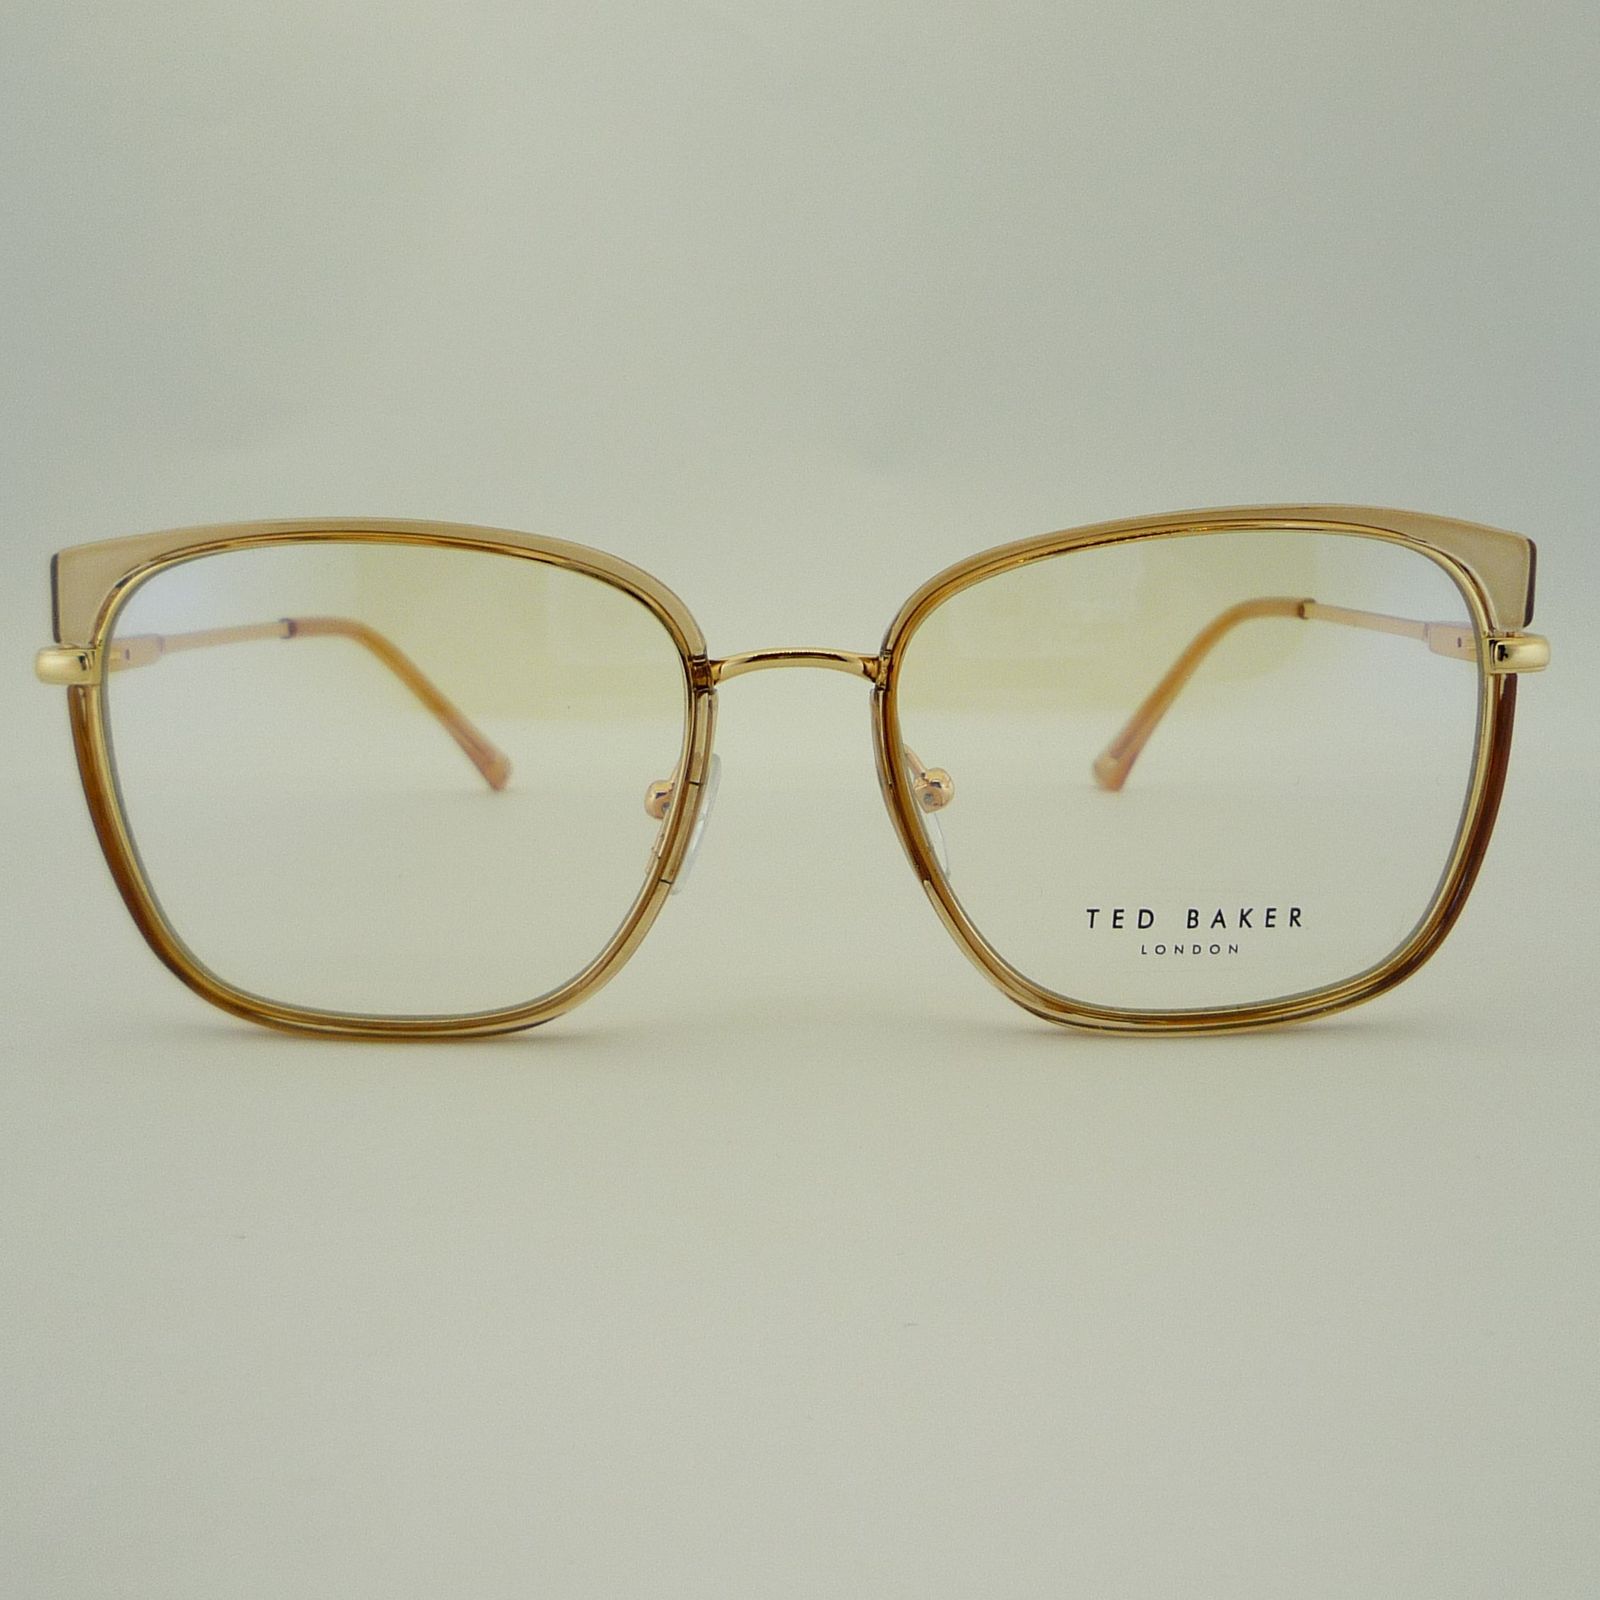 فریم عینک طبی زنانه تد بیکر مدل 95618C9 -  - 2